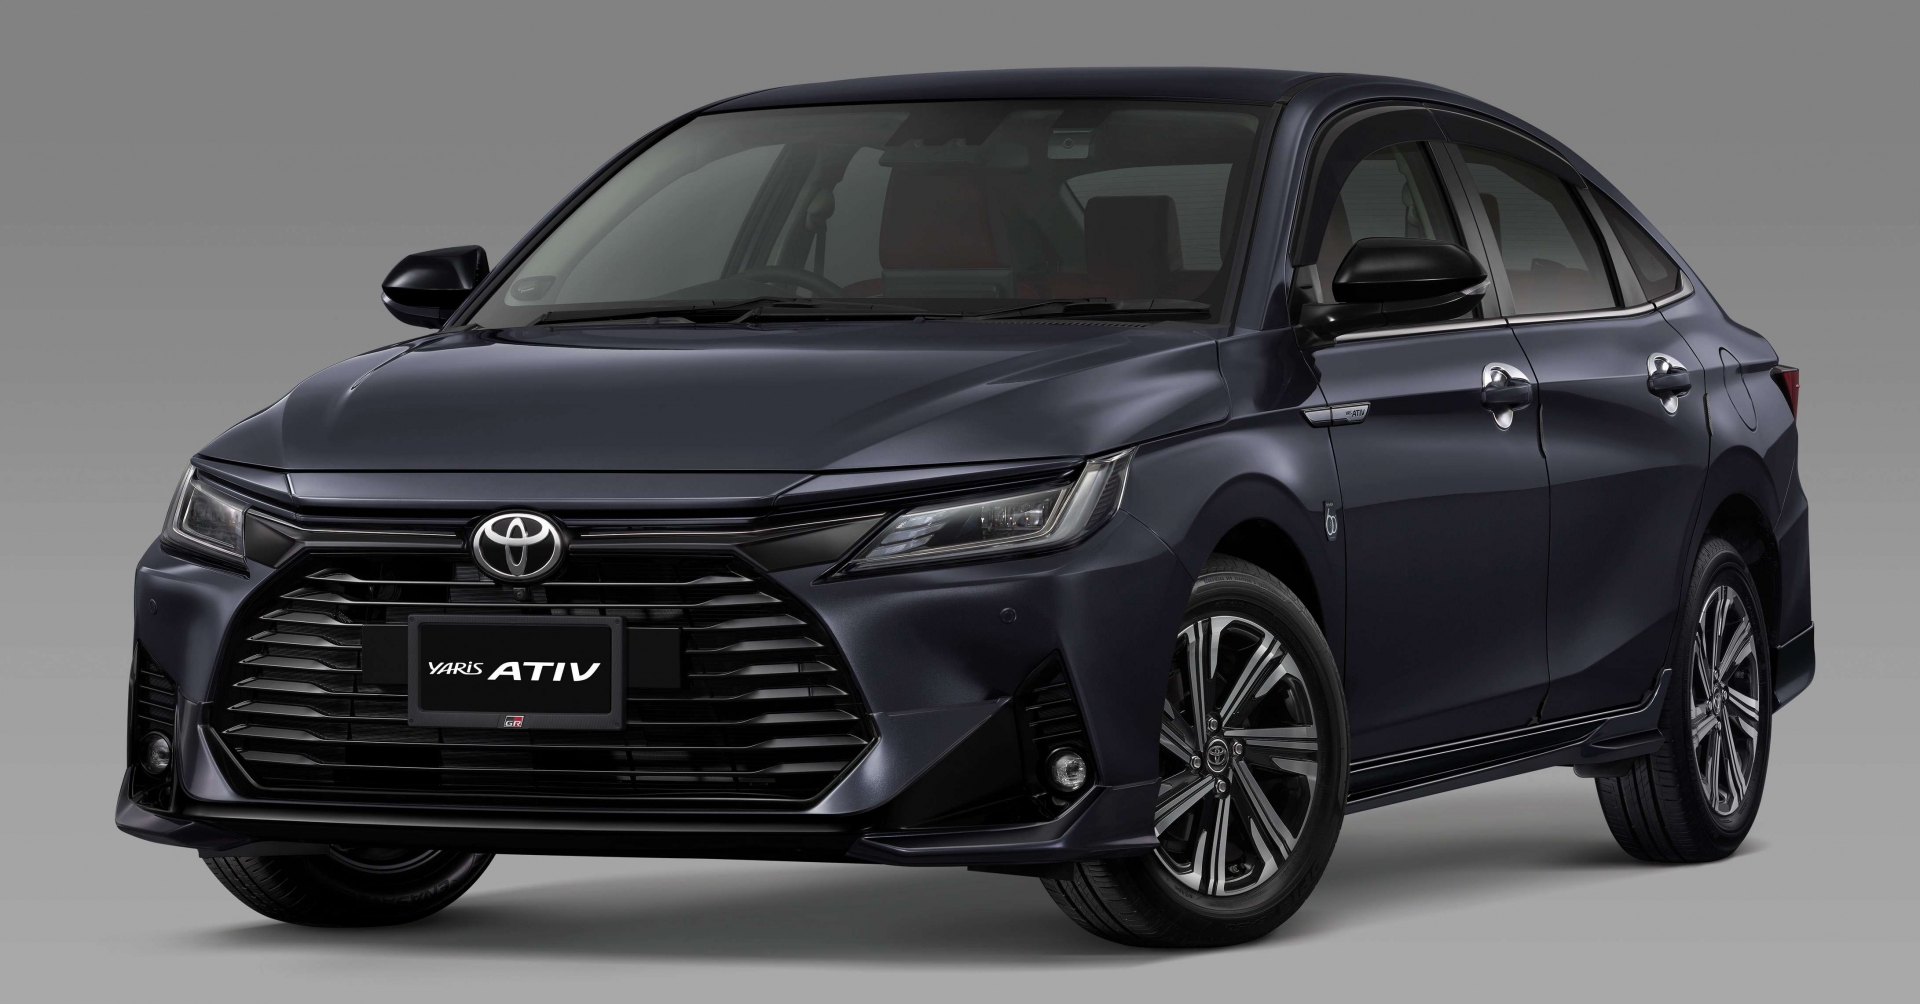 Hãng xe Toyota nổi tiếng tại Việt Nam